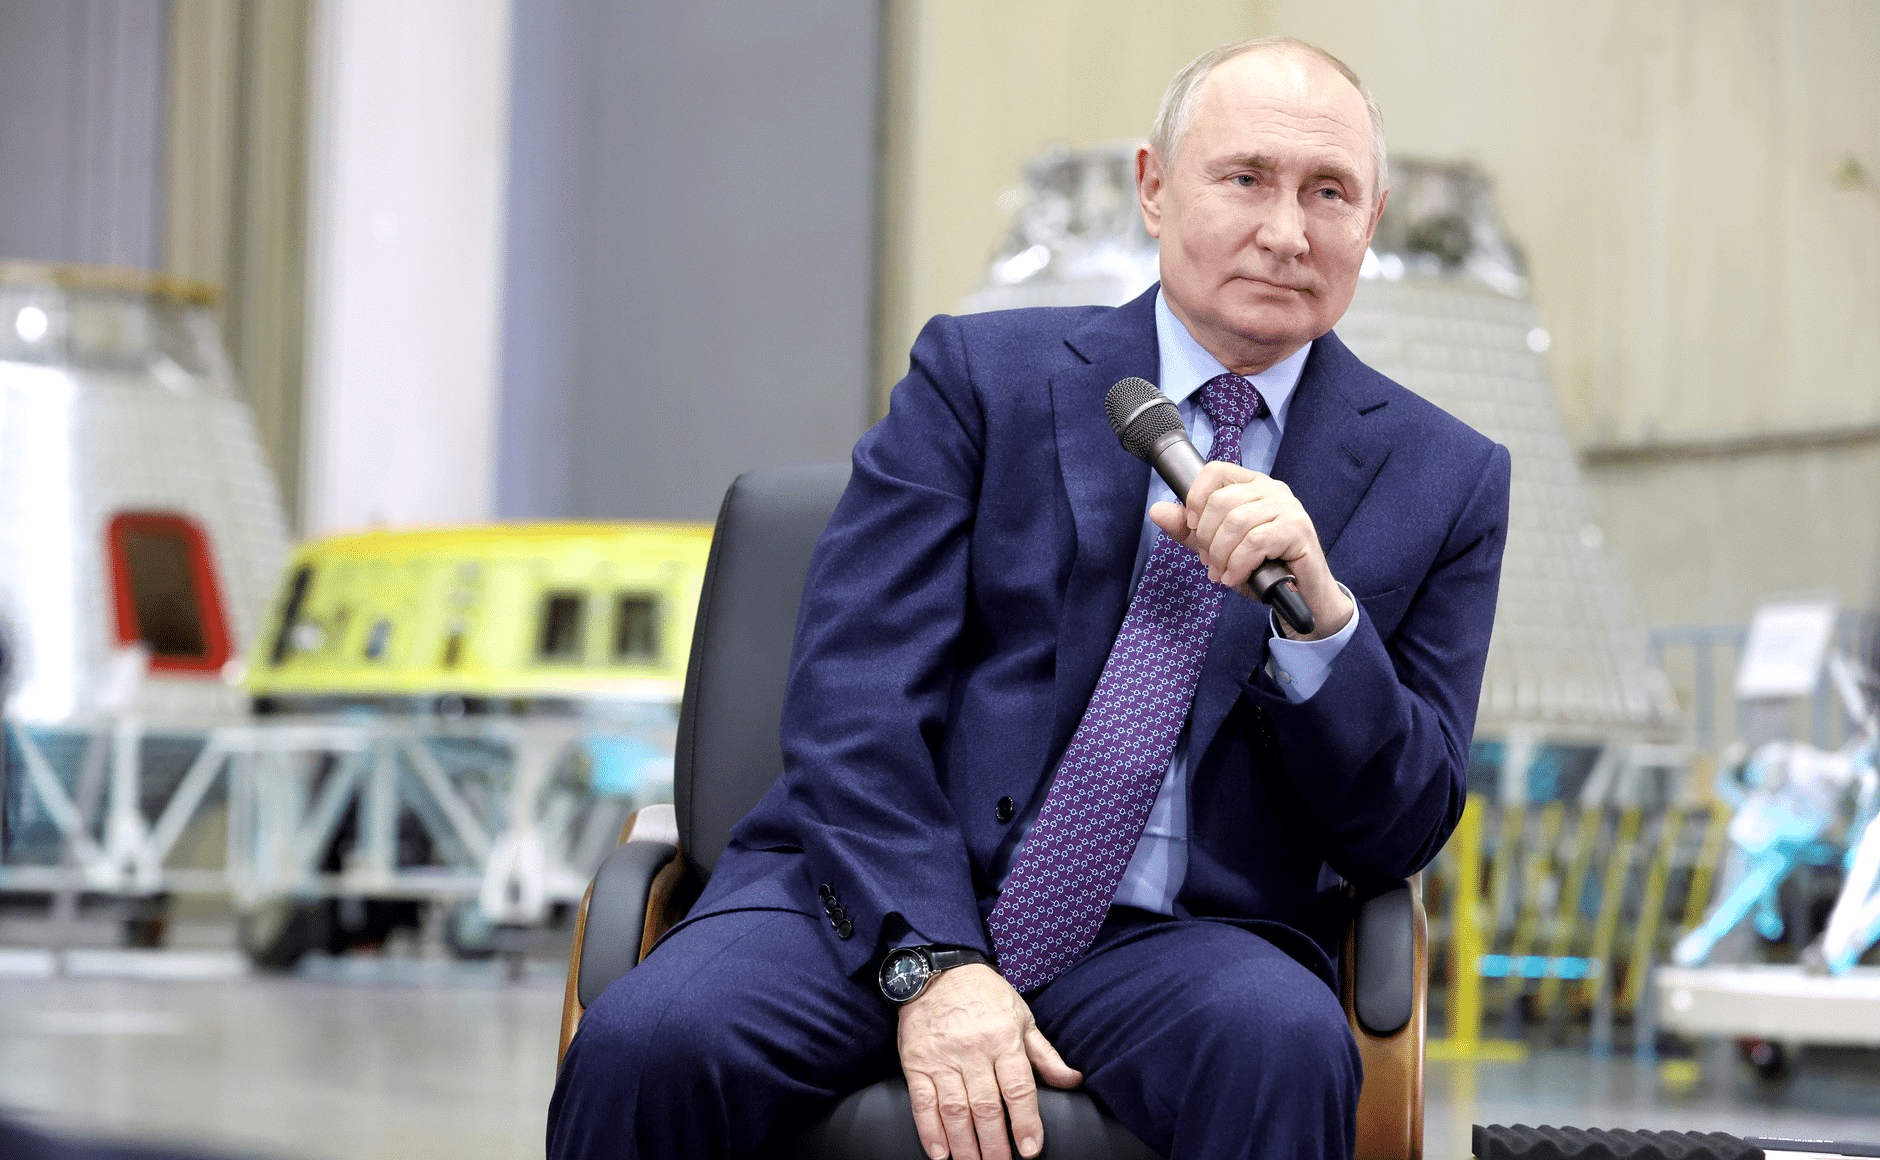 Путин: отечественная школа должна воспитывать патриотизм и давать хорошие знания